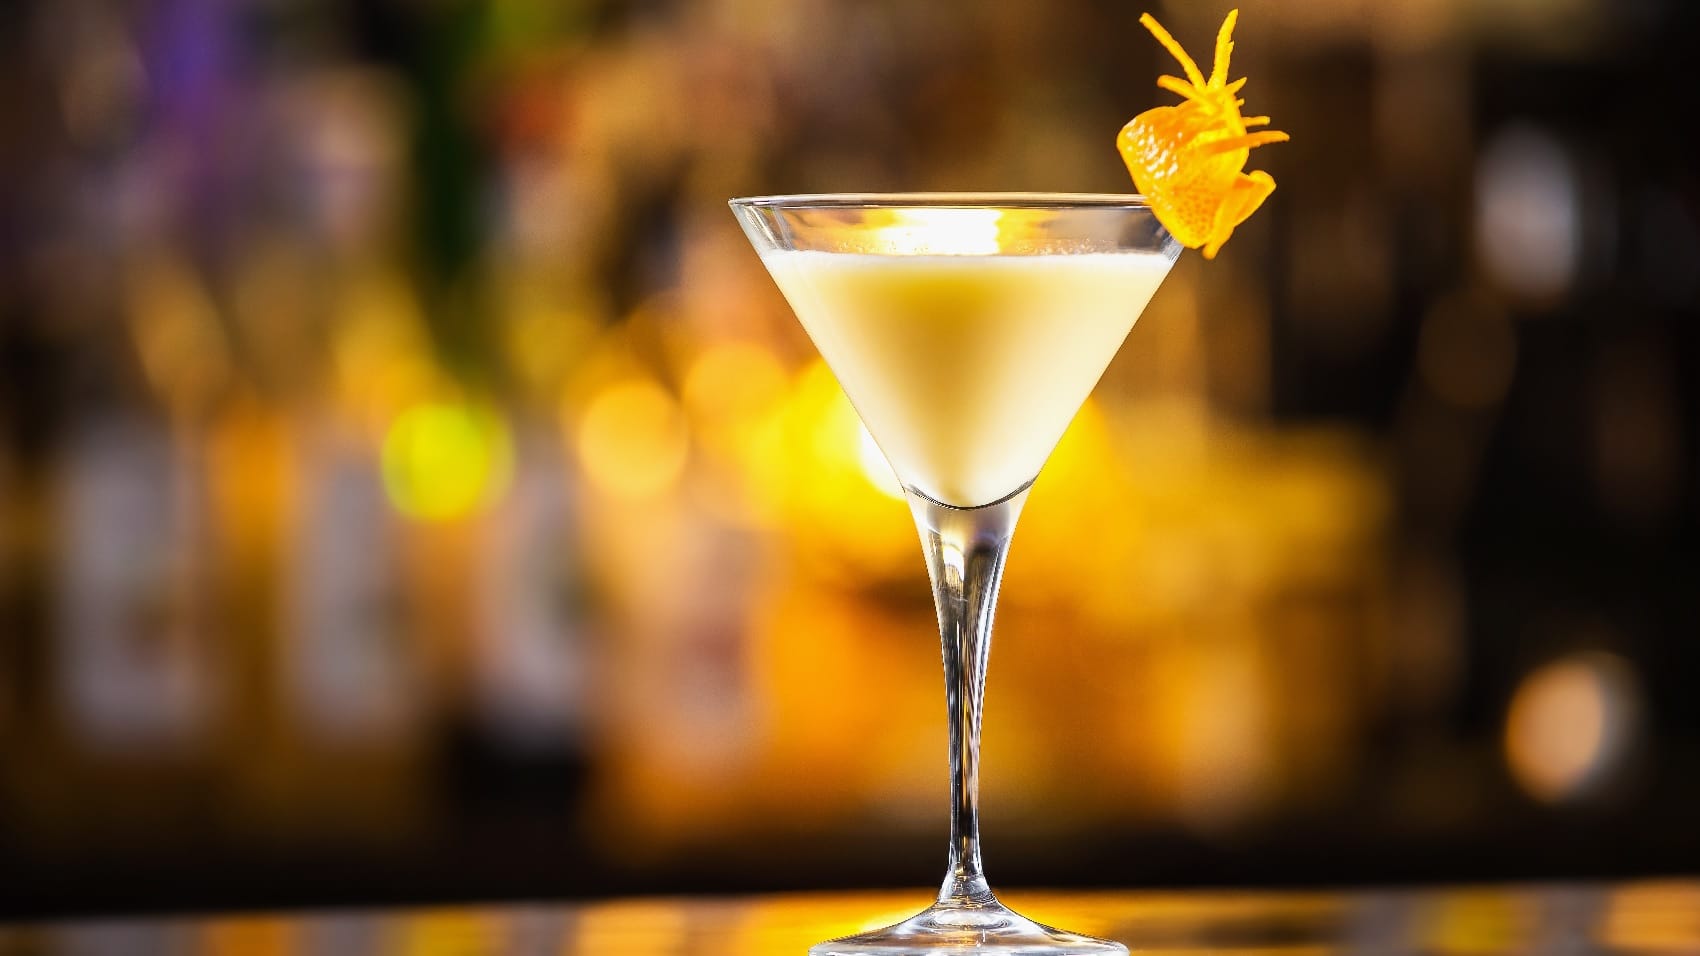 Ein Martini-Glas vor leuchtendem Hintergrund mit gelb-weißer Flüssigkeit.